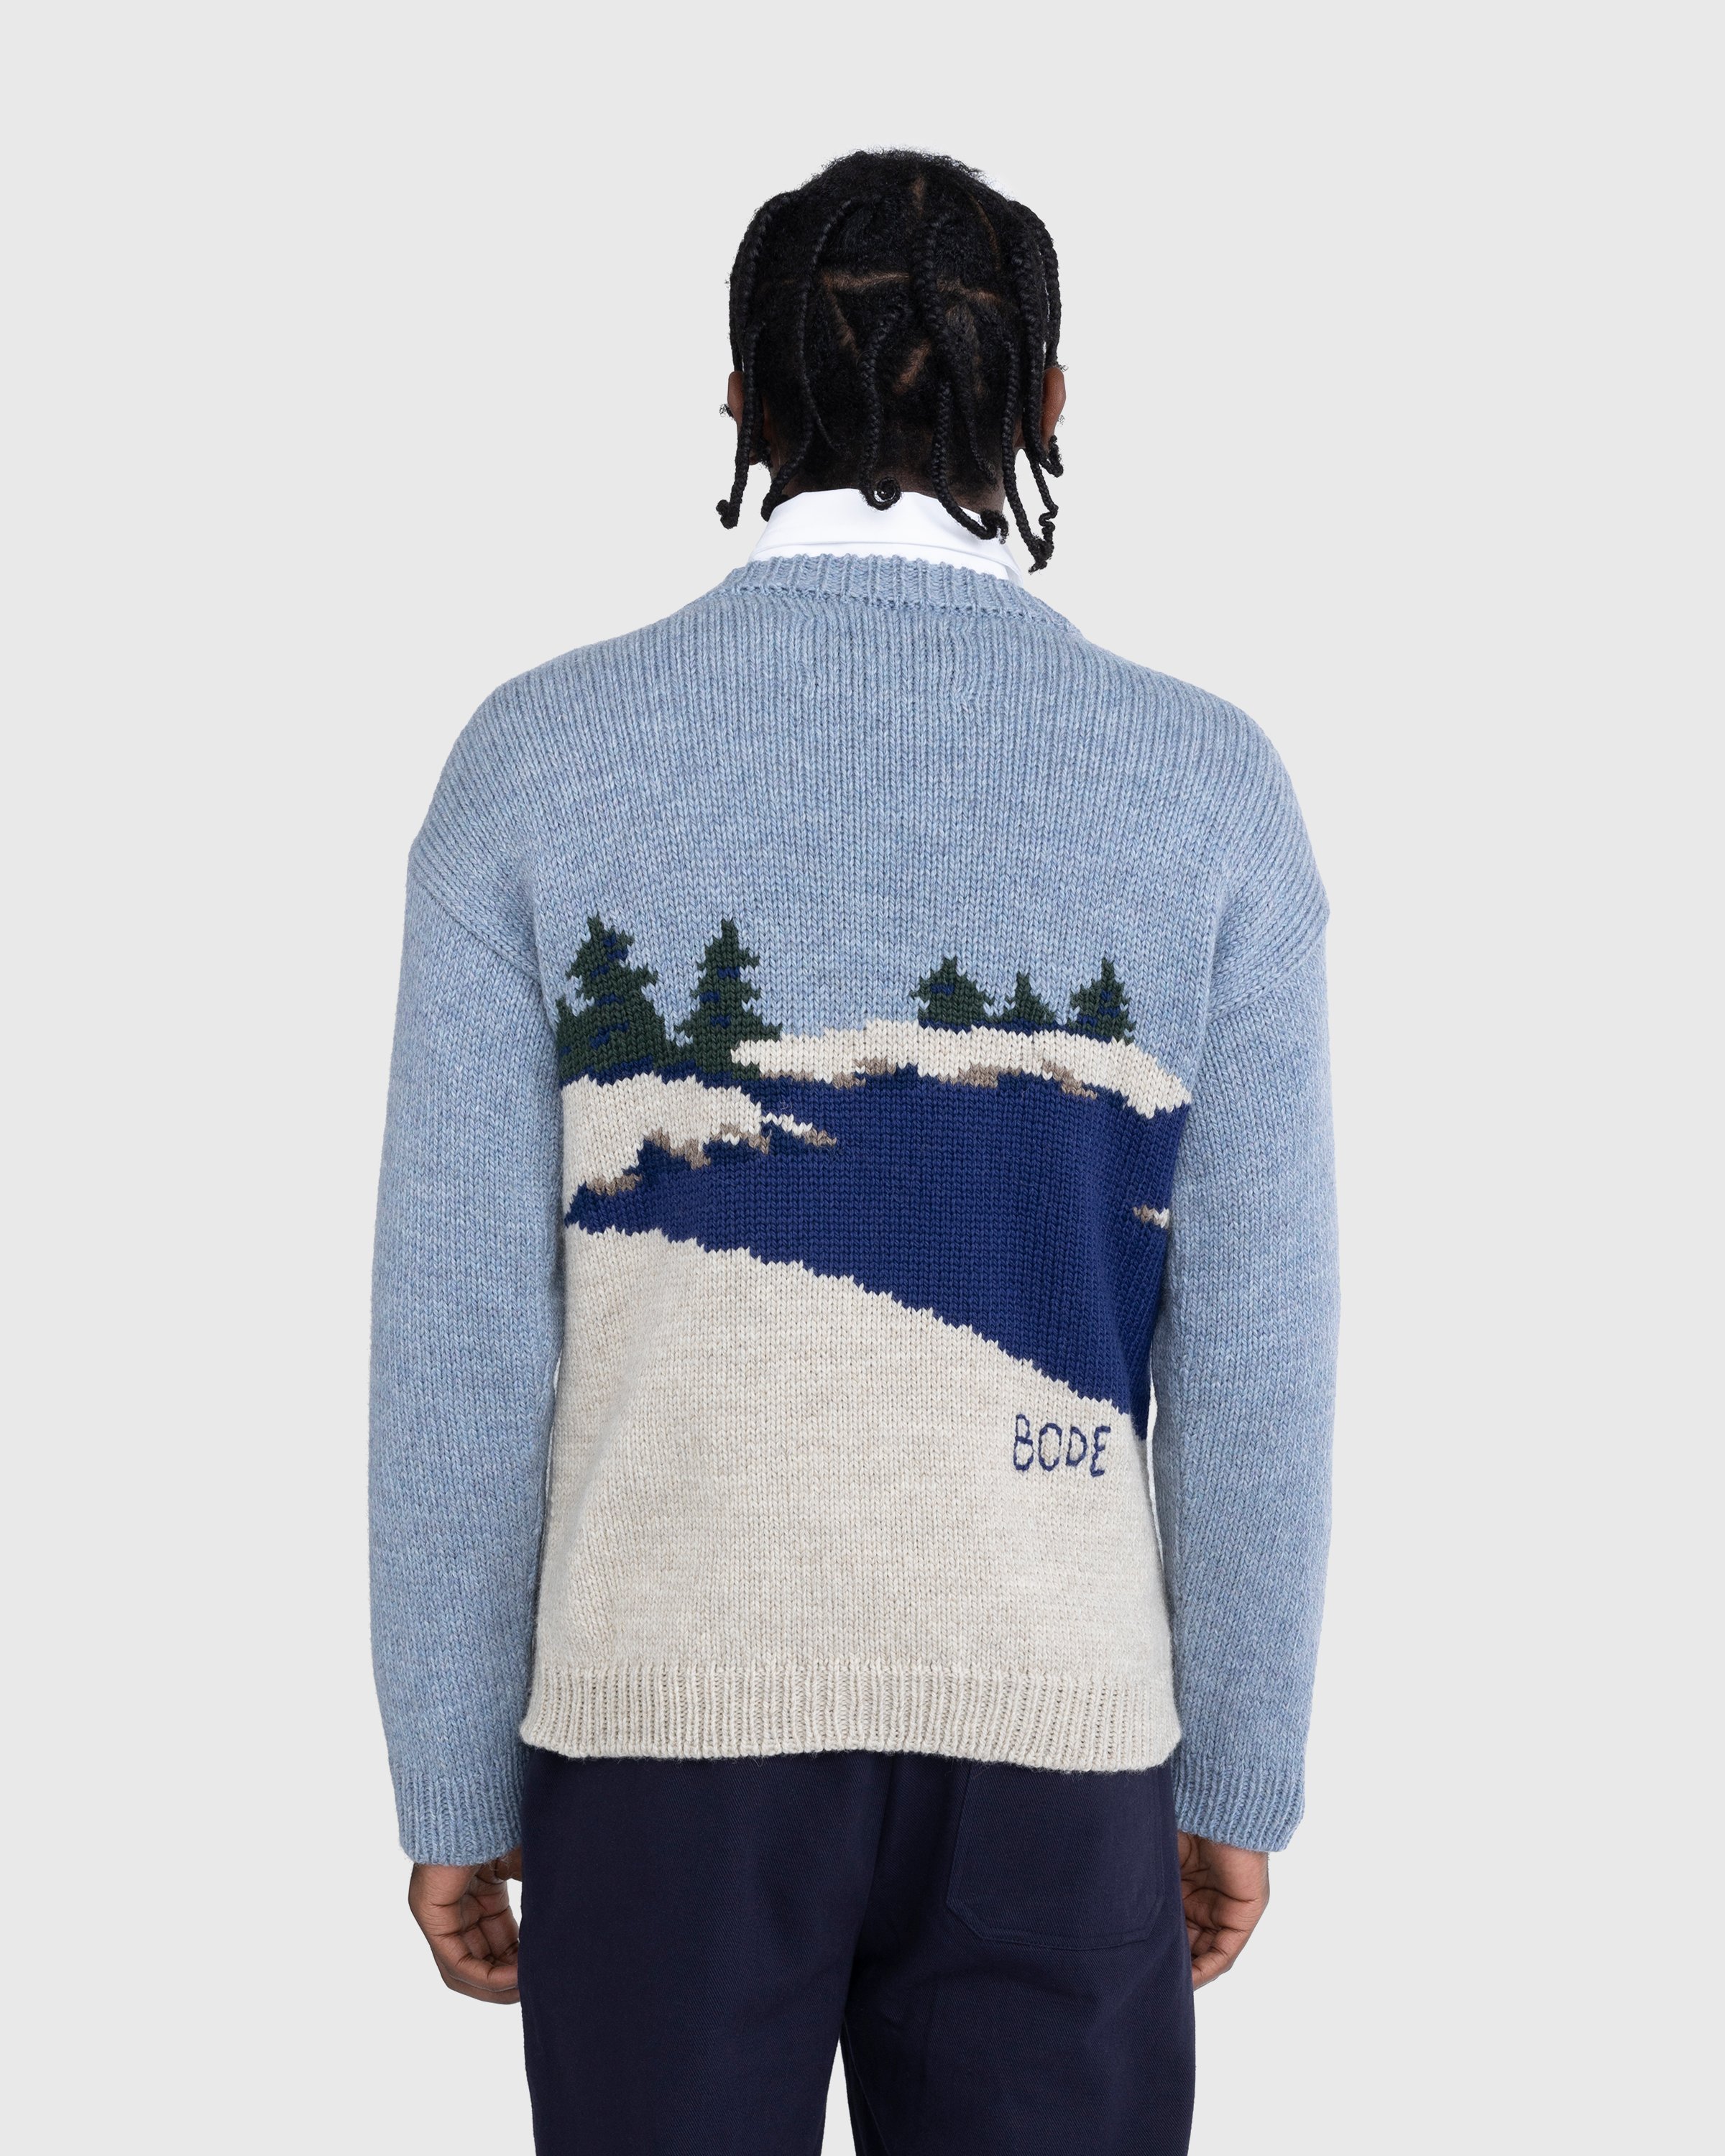 Bode - Highland Lighthouse Sweater Multi - Clothing - Multi - Image 4